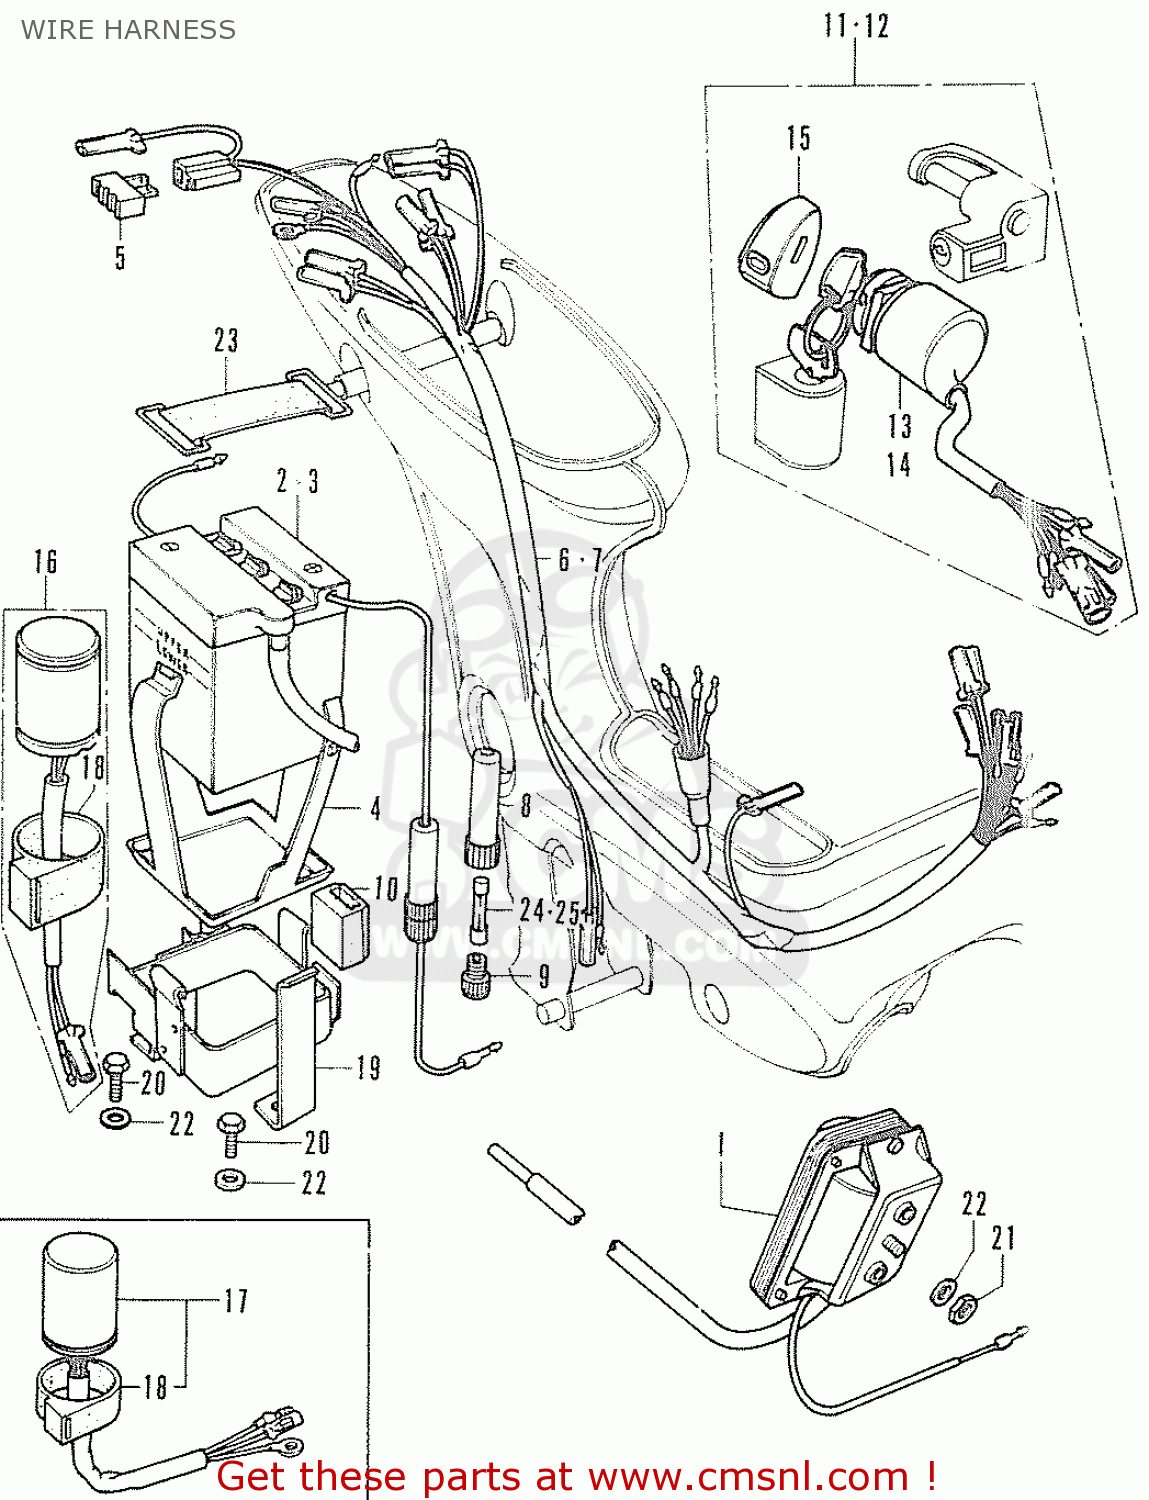 Honda chally parts #6